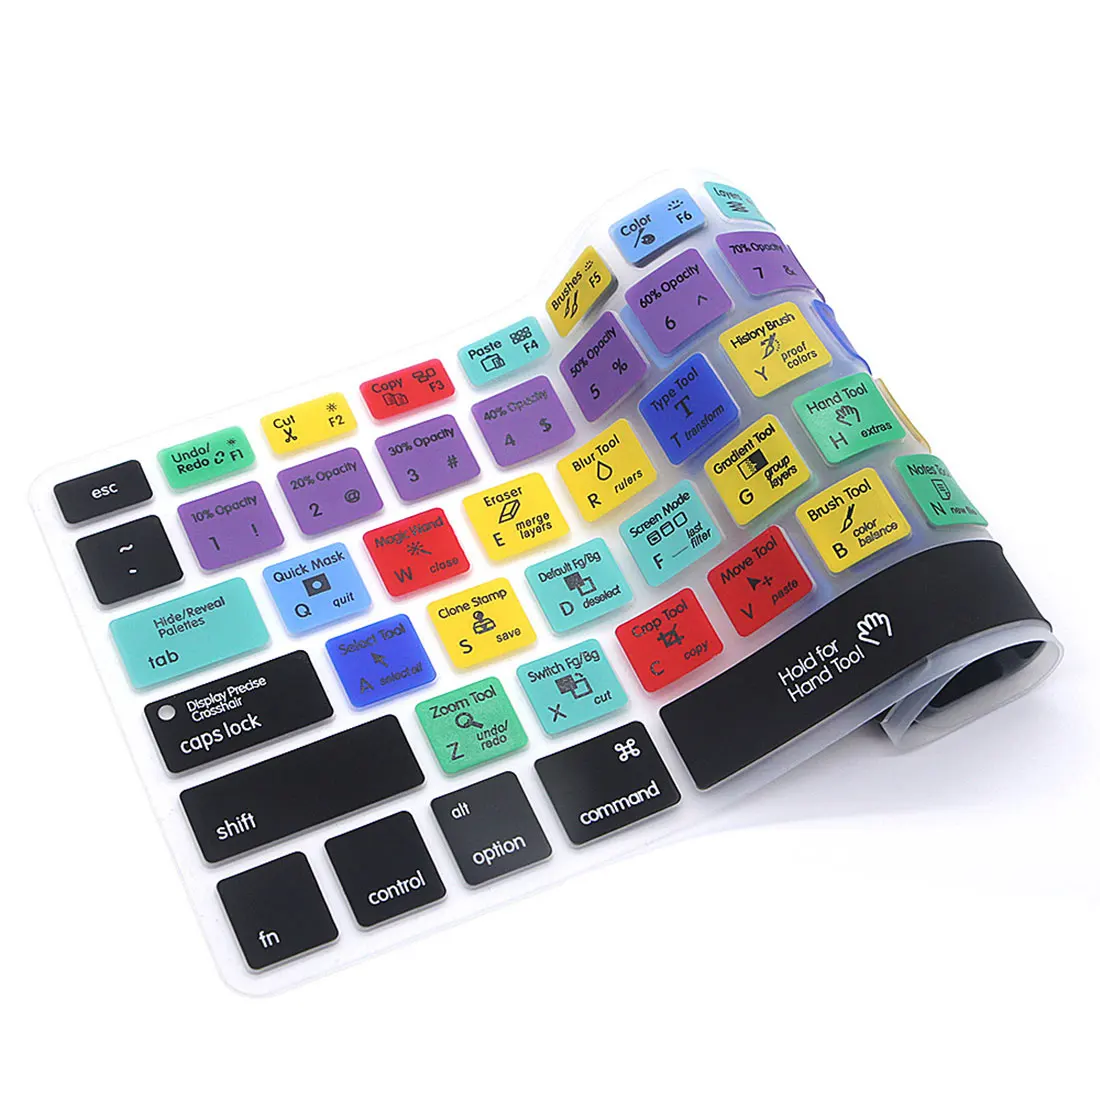 Etmakit новая клавиатура ярлык дизайн функциональный силиконовый чехол для Macbook Pro Air 13 15 17 протектор стикер